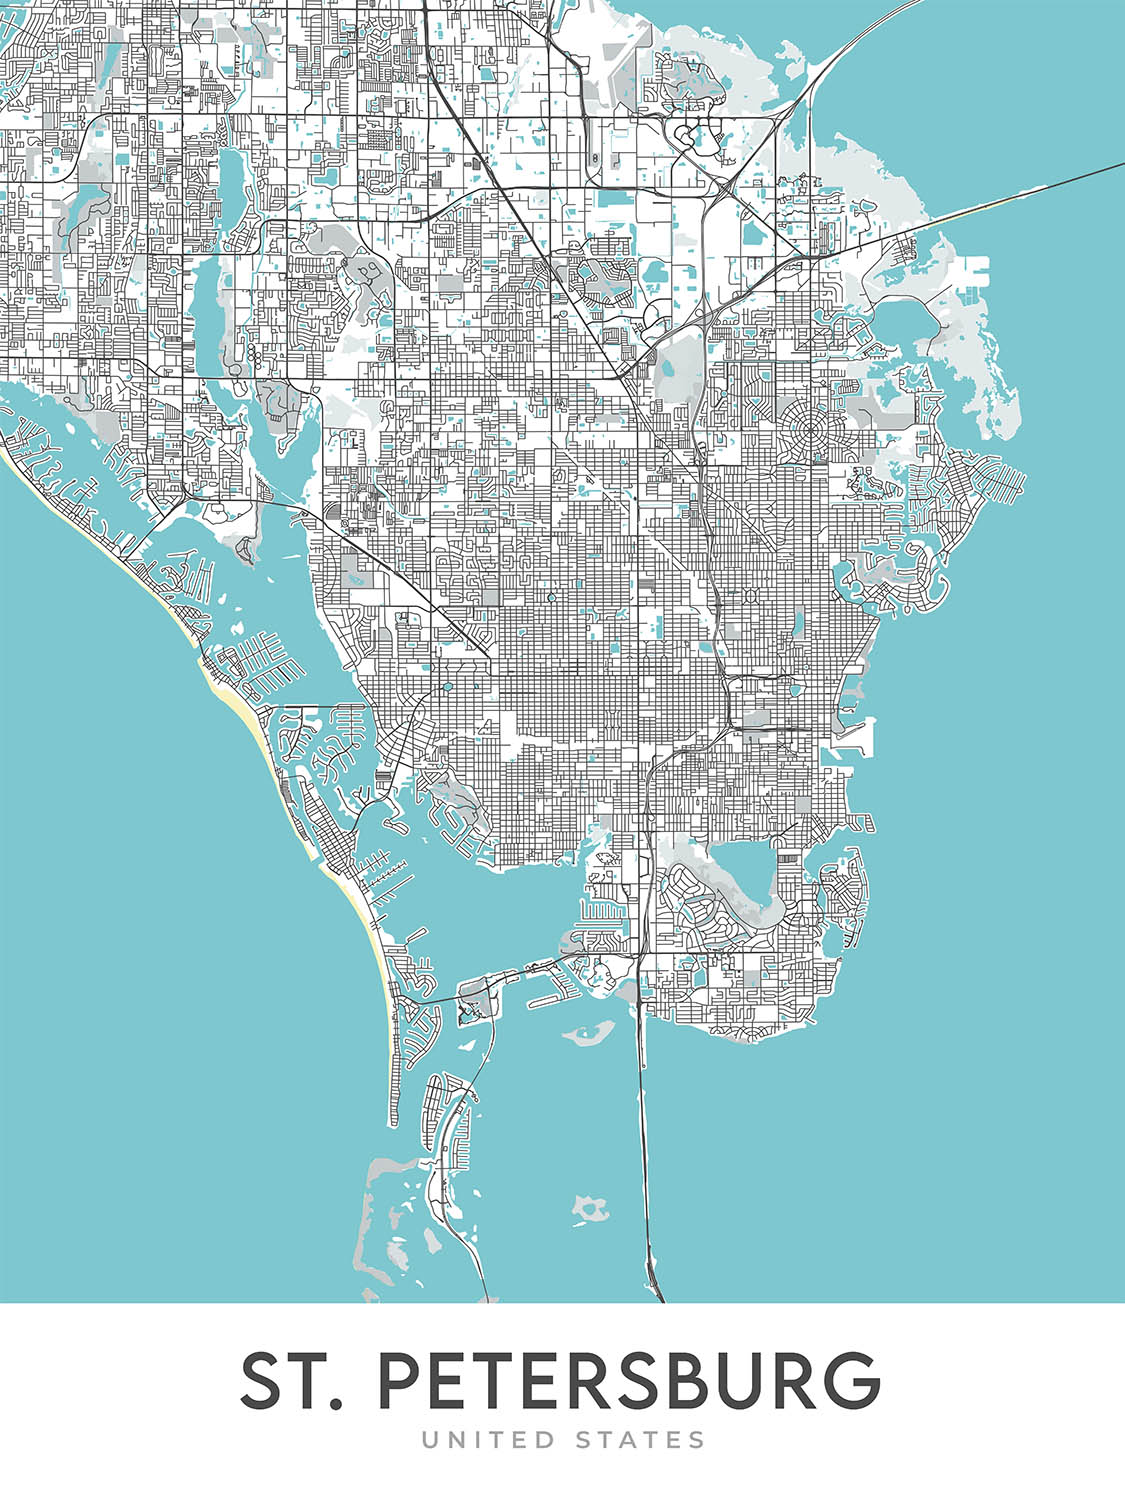 Mapa moderno de la ciudad de San Petersburgo, Florida: Crescent Lake, el centro, el antiguo noreste, Pinellas Point, el muelle